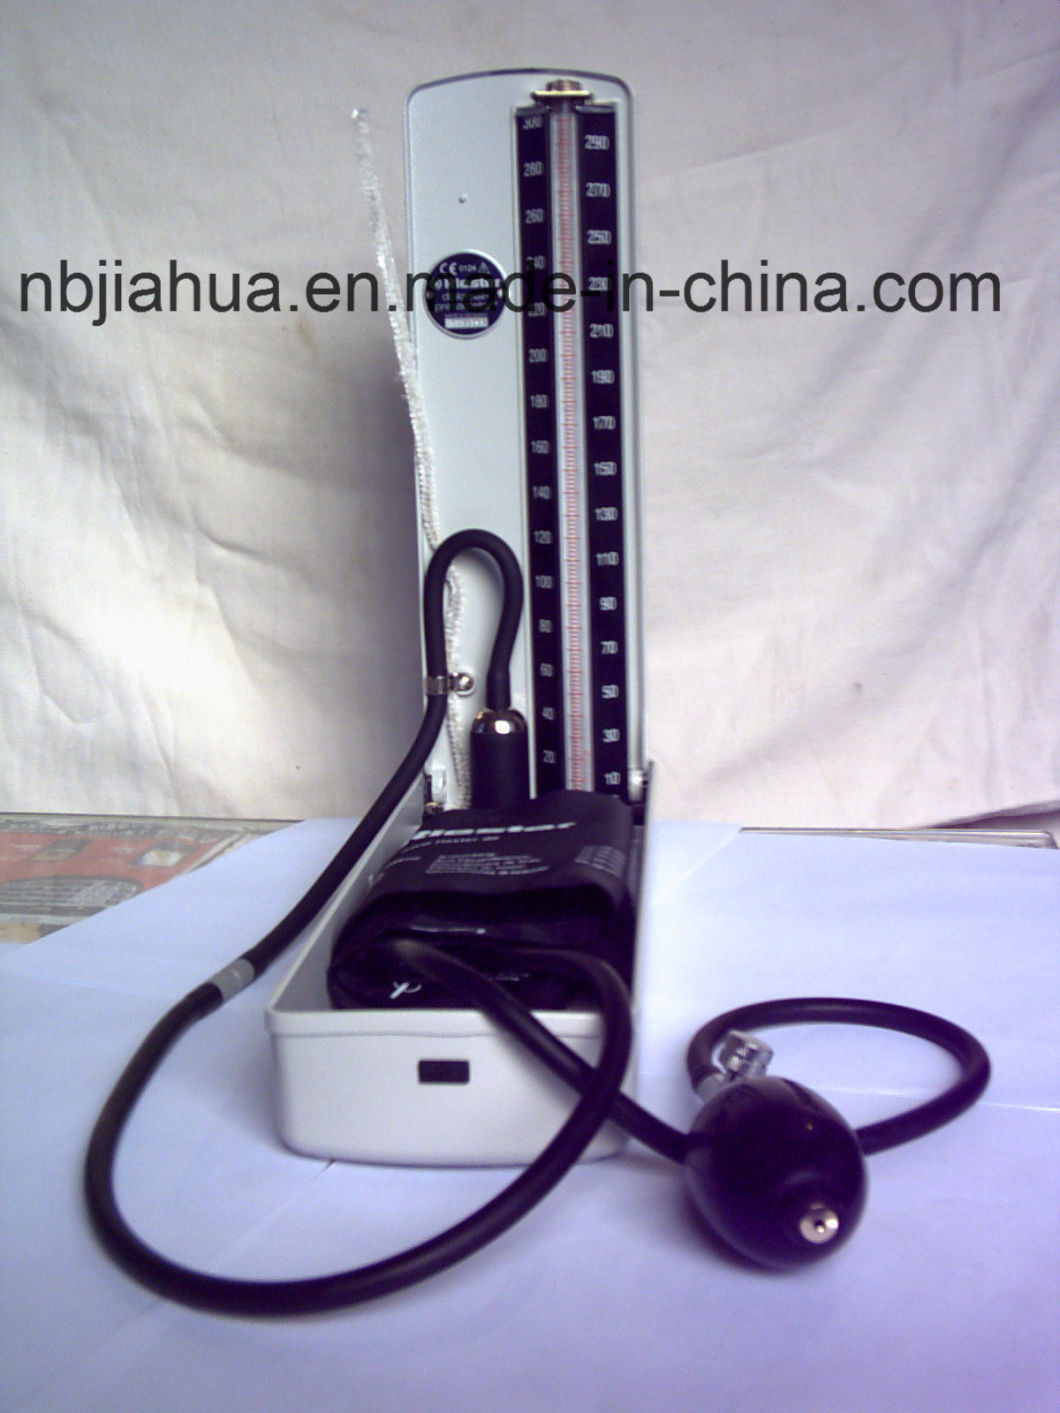 Yuyao Jiahua Medical Mercury Sphygmomanometer Ce/ISO Certified